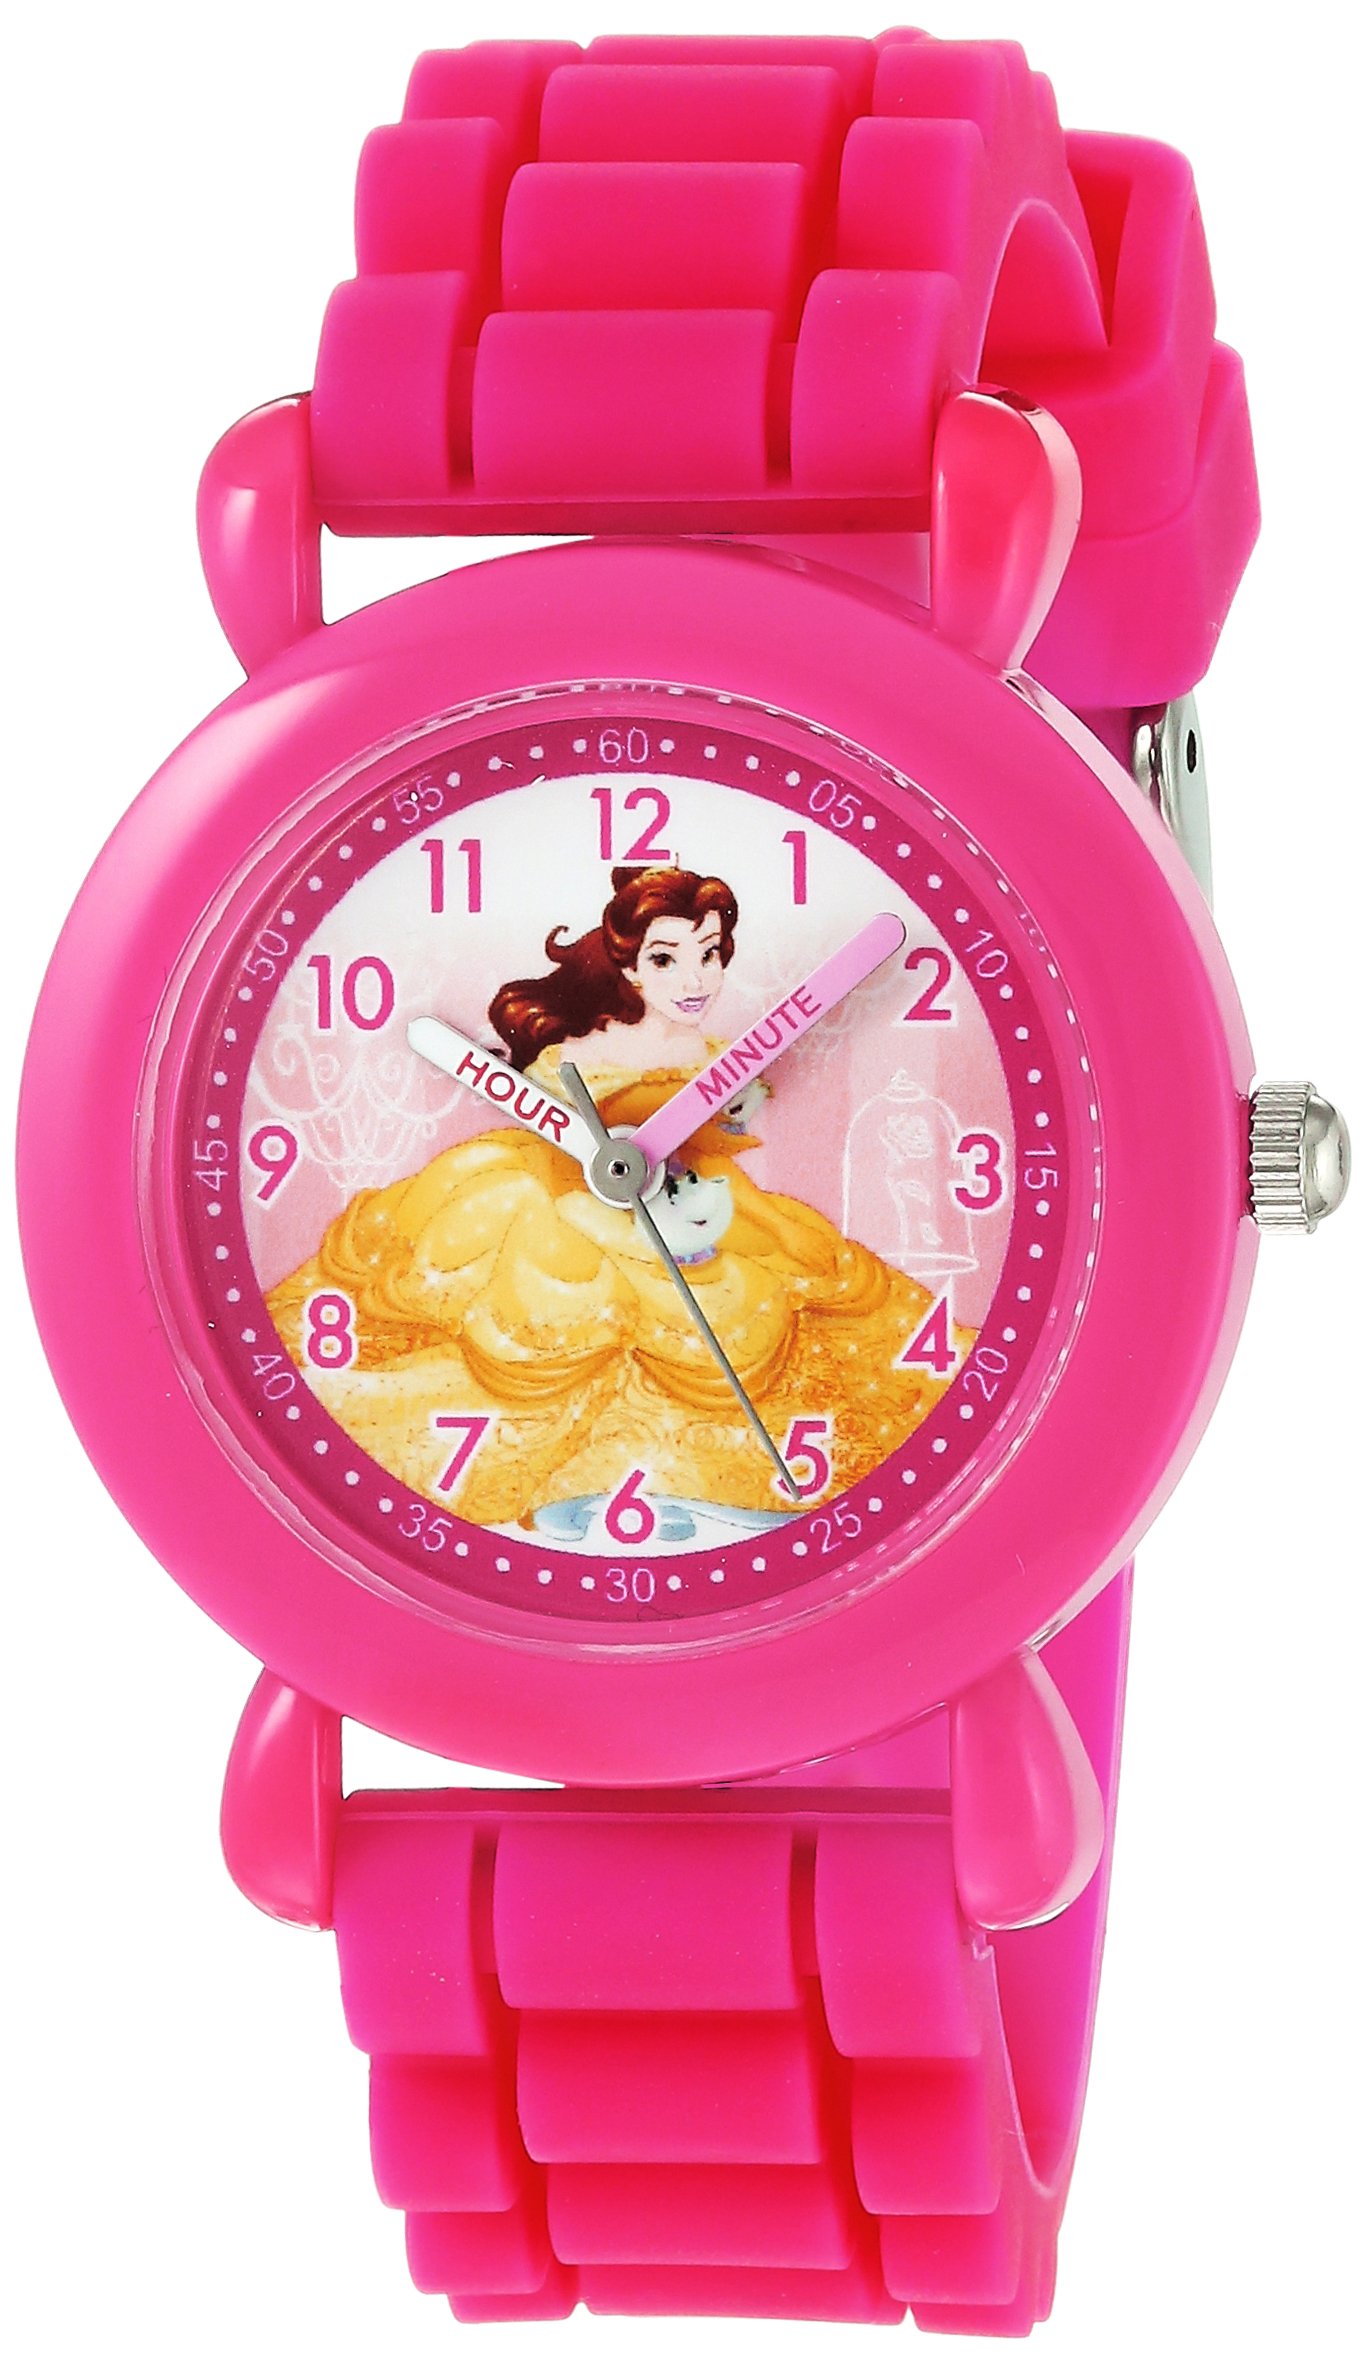 DISNEY ガールズ プリンセス ベル アナログクォーツ腕時計 シリコンストラップ付き ピンク 16